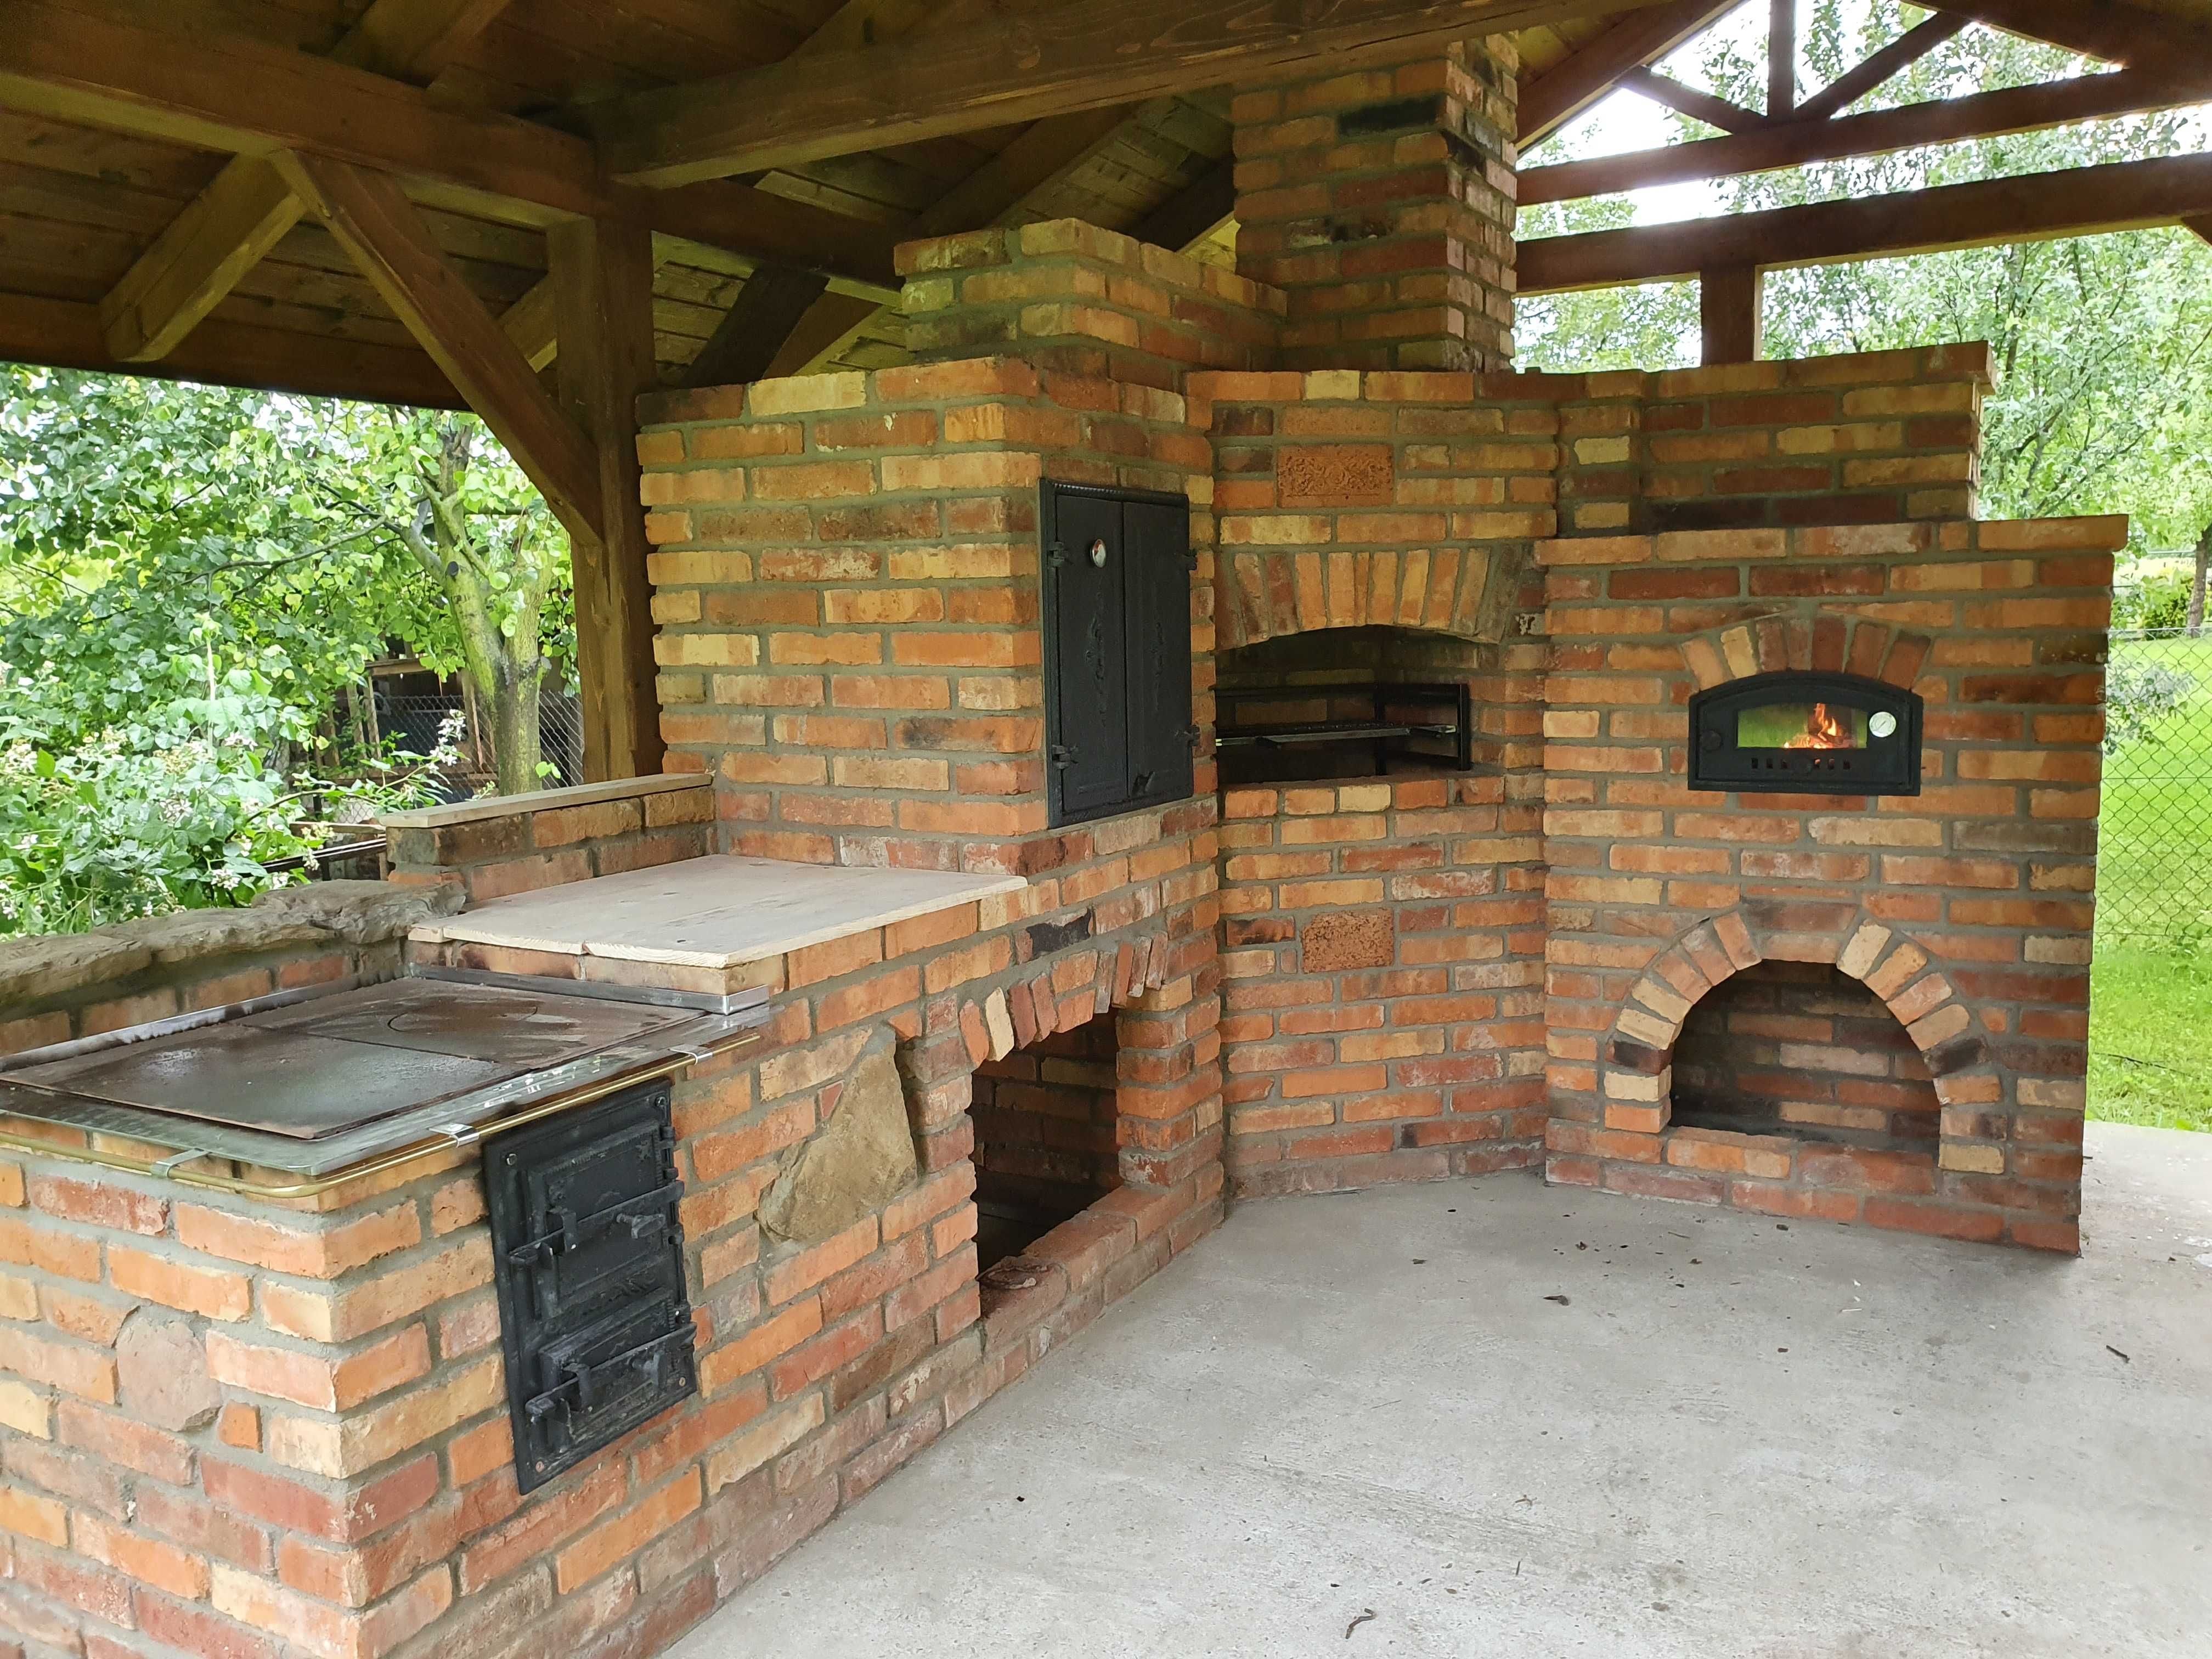 Grill murowany z cegly, wedzarnia, piec pizza kuchnia ogrodowa